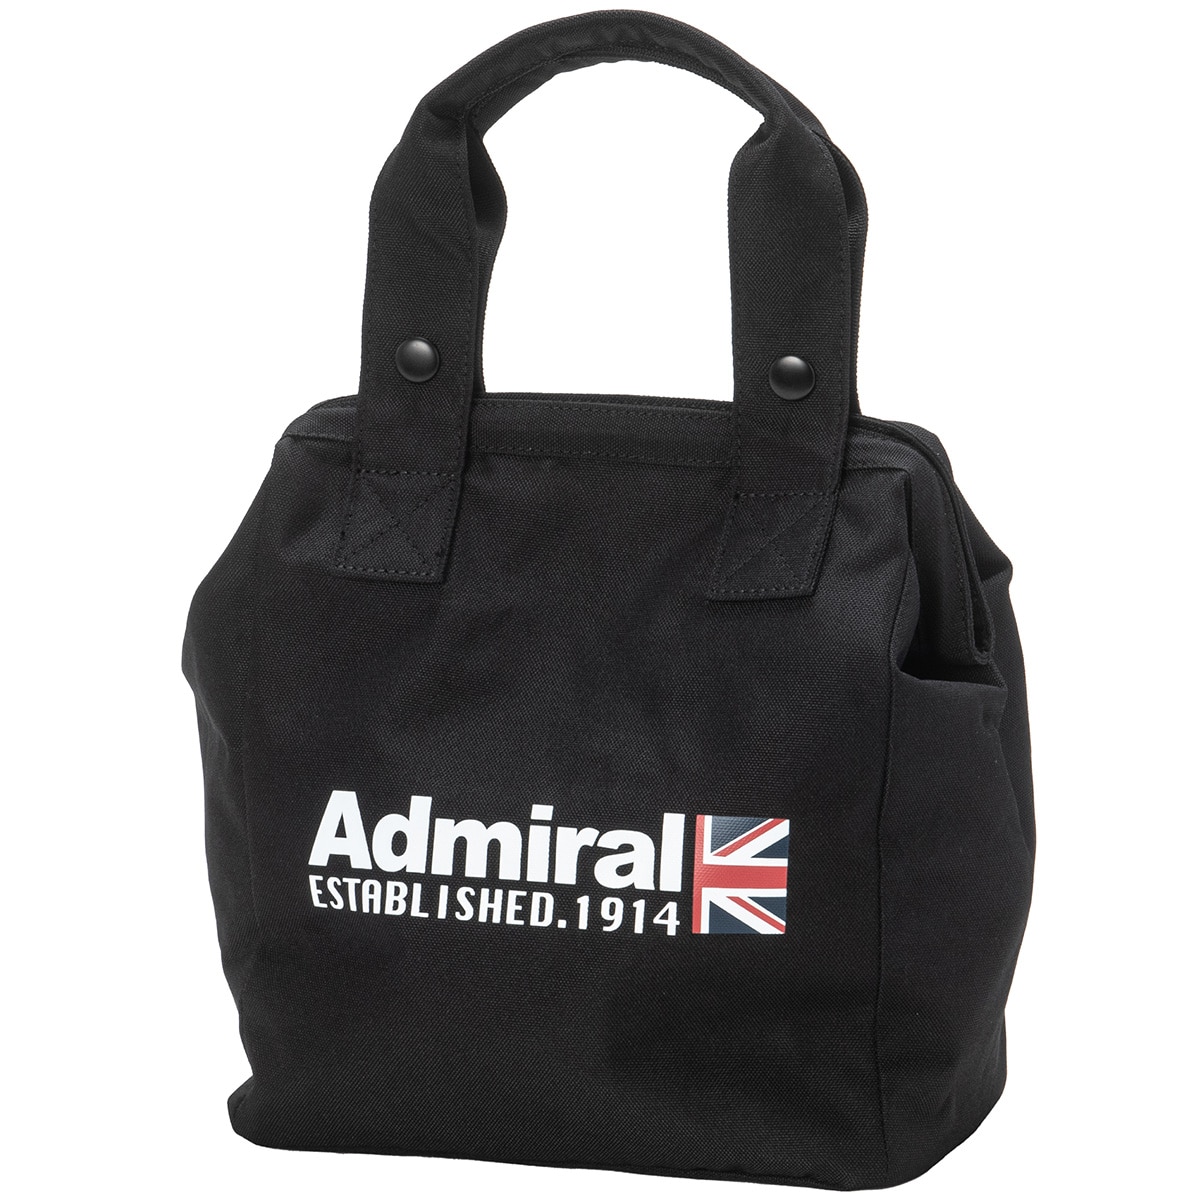 クールバッグ(ラウンドバッグ)|Admiral(アドミラル) ADMZ3BE6の通販